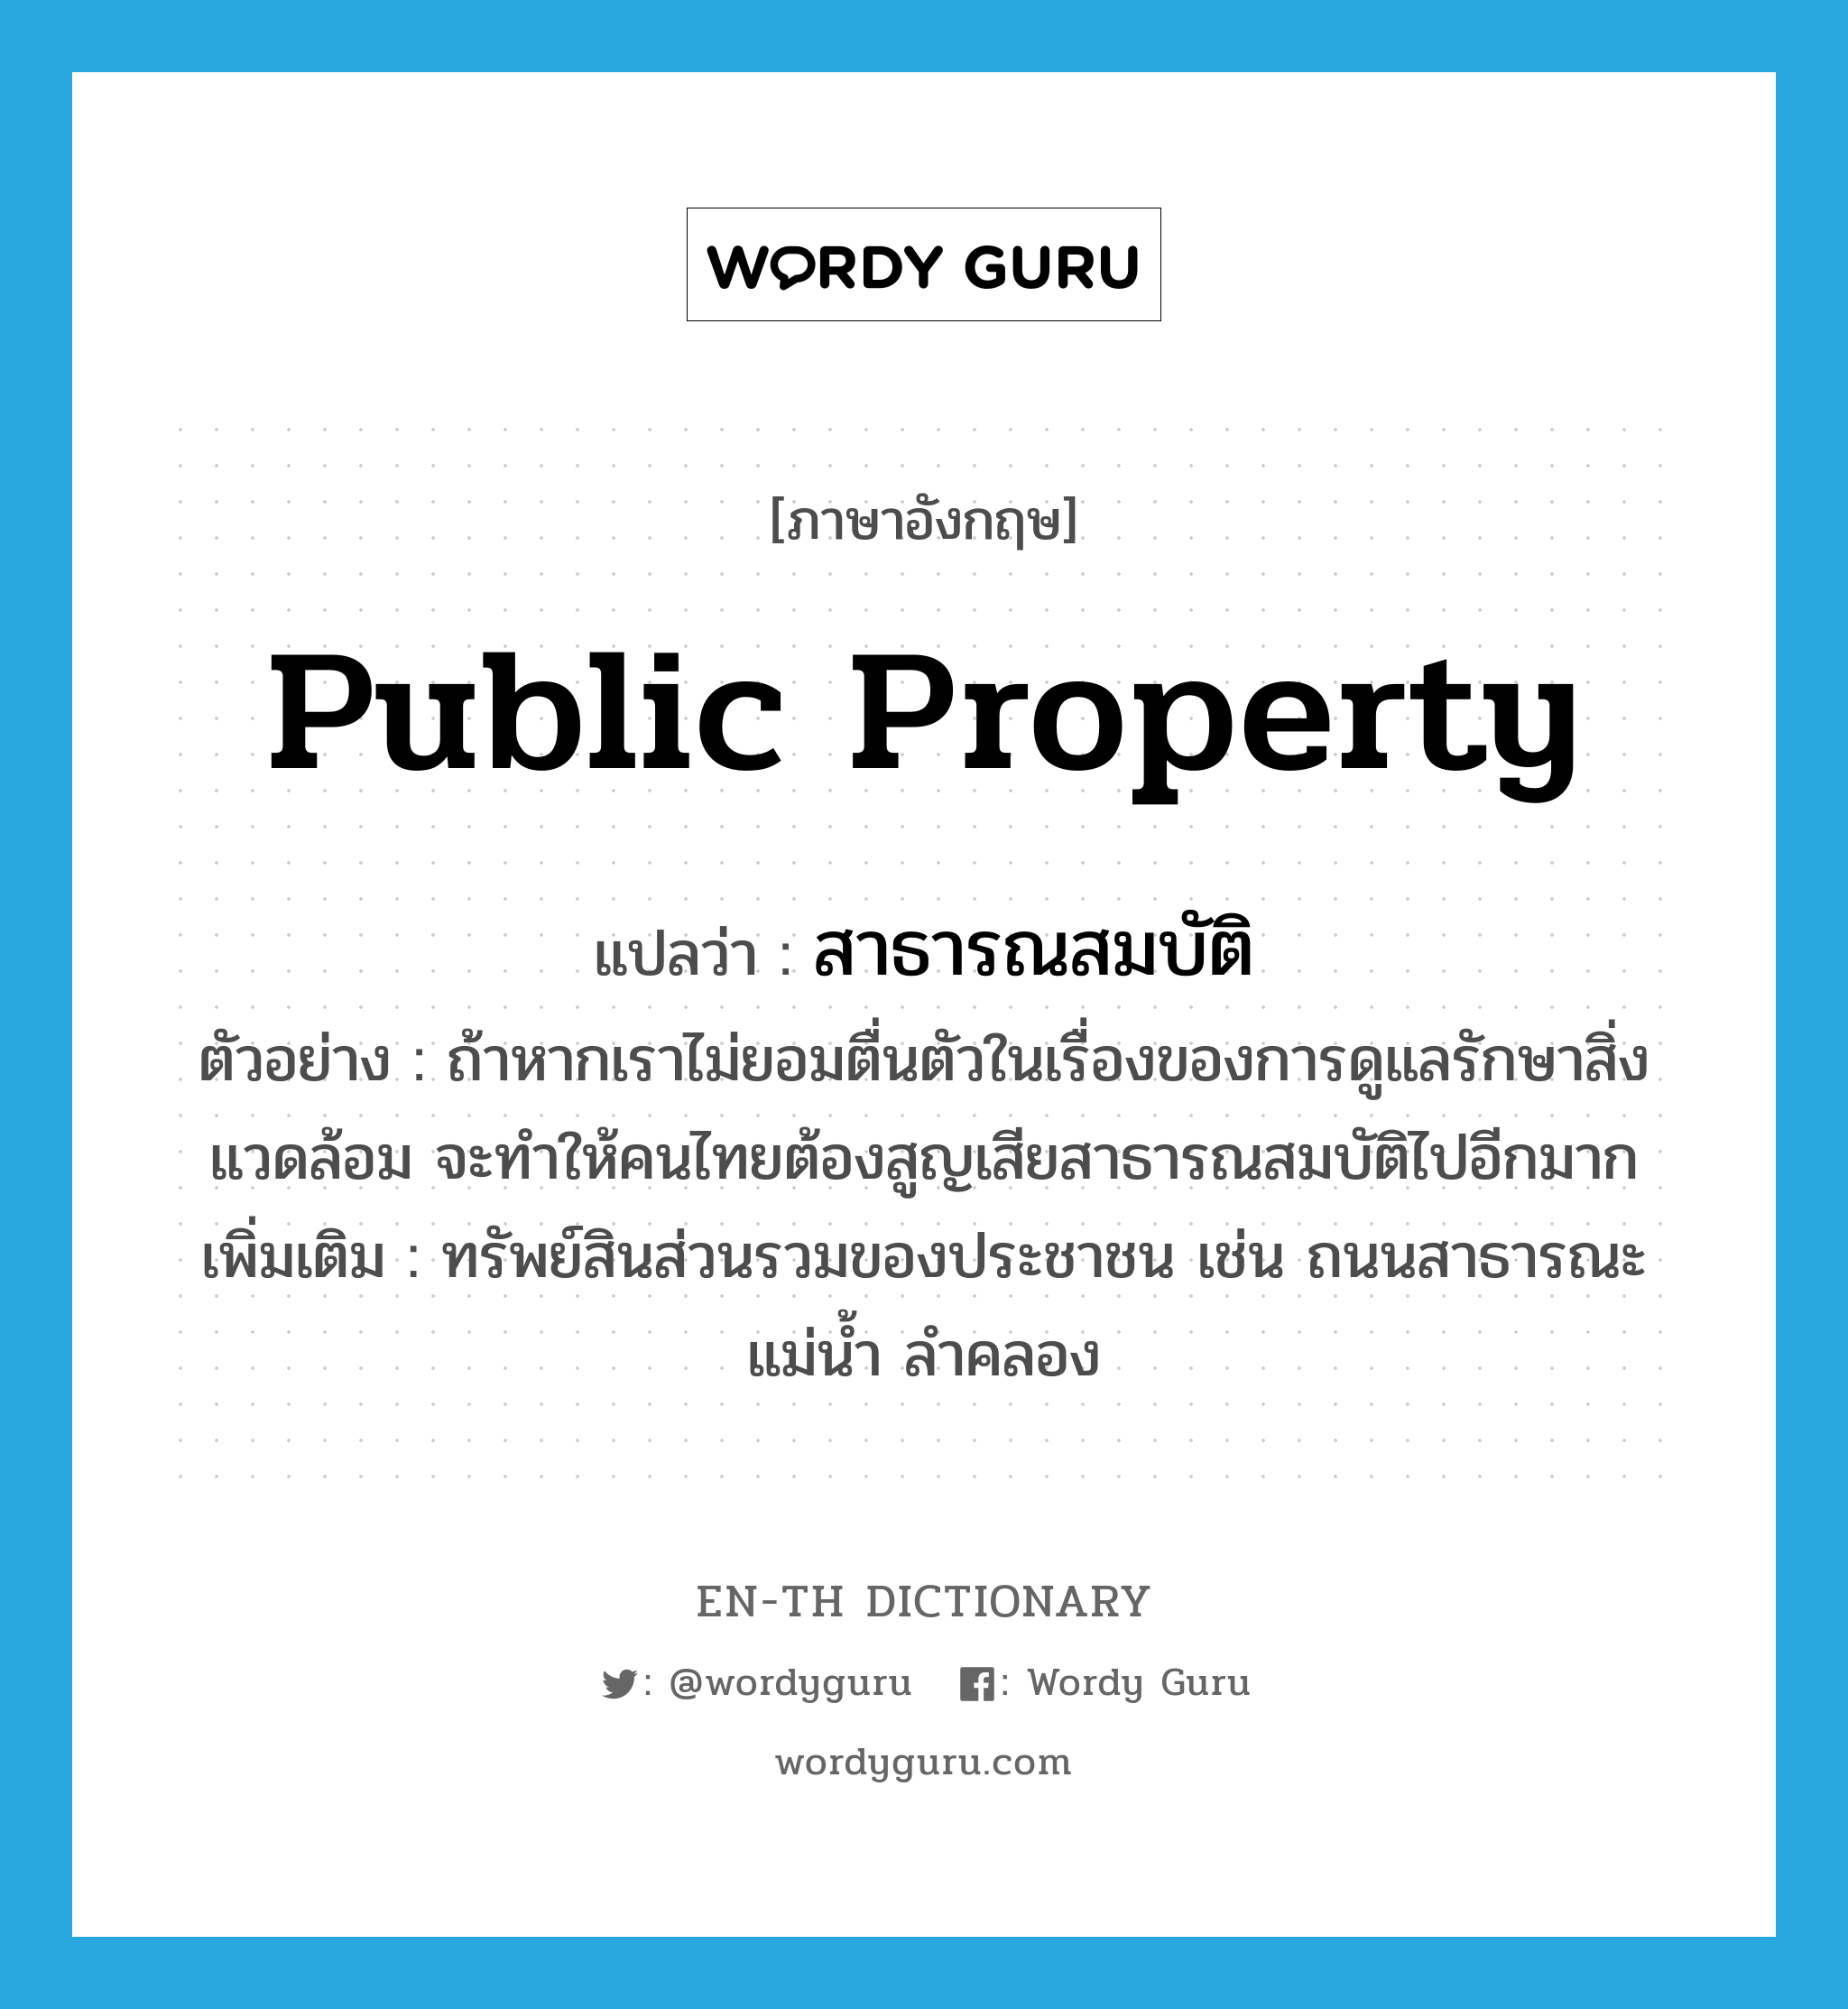 public property แปลว่า?, คำศัพท์ภาษาอังกฤษ public property แปลว่า สาธารณสมบัติ ประเภท N ตัวอย่าง ถ้าหากเราไม่ยอมตื่นตัวในเรื่องของการดูแลรักษาสิ่งแวดล้อม จะทำให้คนไทยต้องสูญเสียสาธารณสมบัติไปอีกมาก เพิ่มเติม ทรัพย์สินส่วนรวมของประชาชน เช่น ถนนสาธารณะ แม่น้ำ ลำคลอง หมวด N